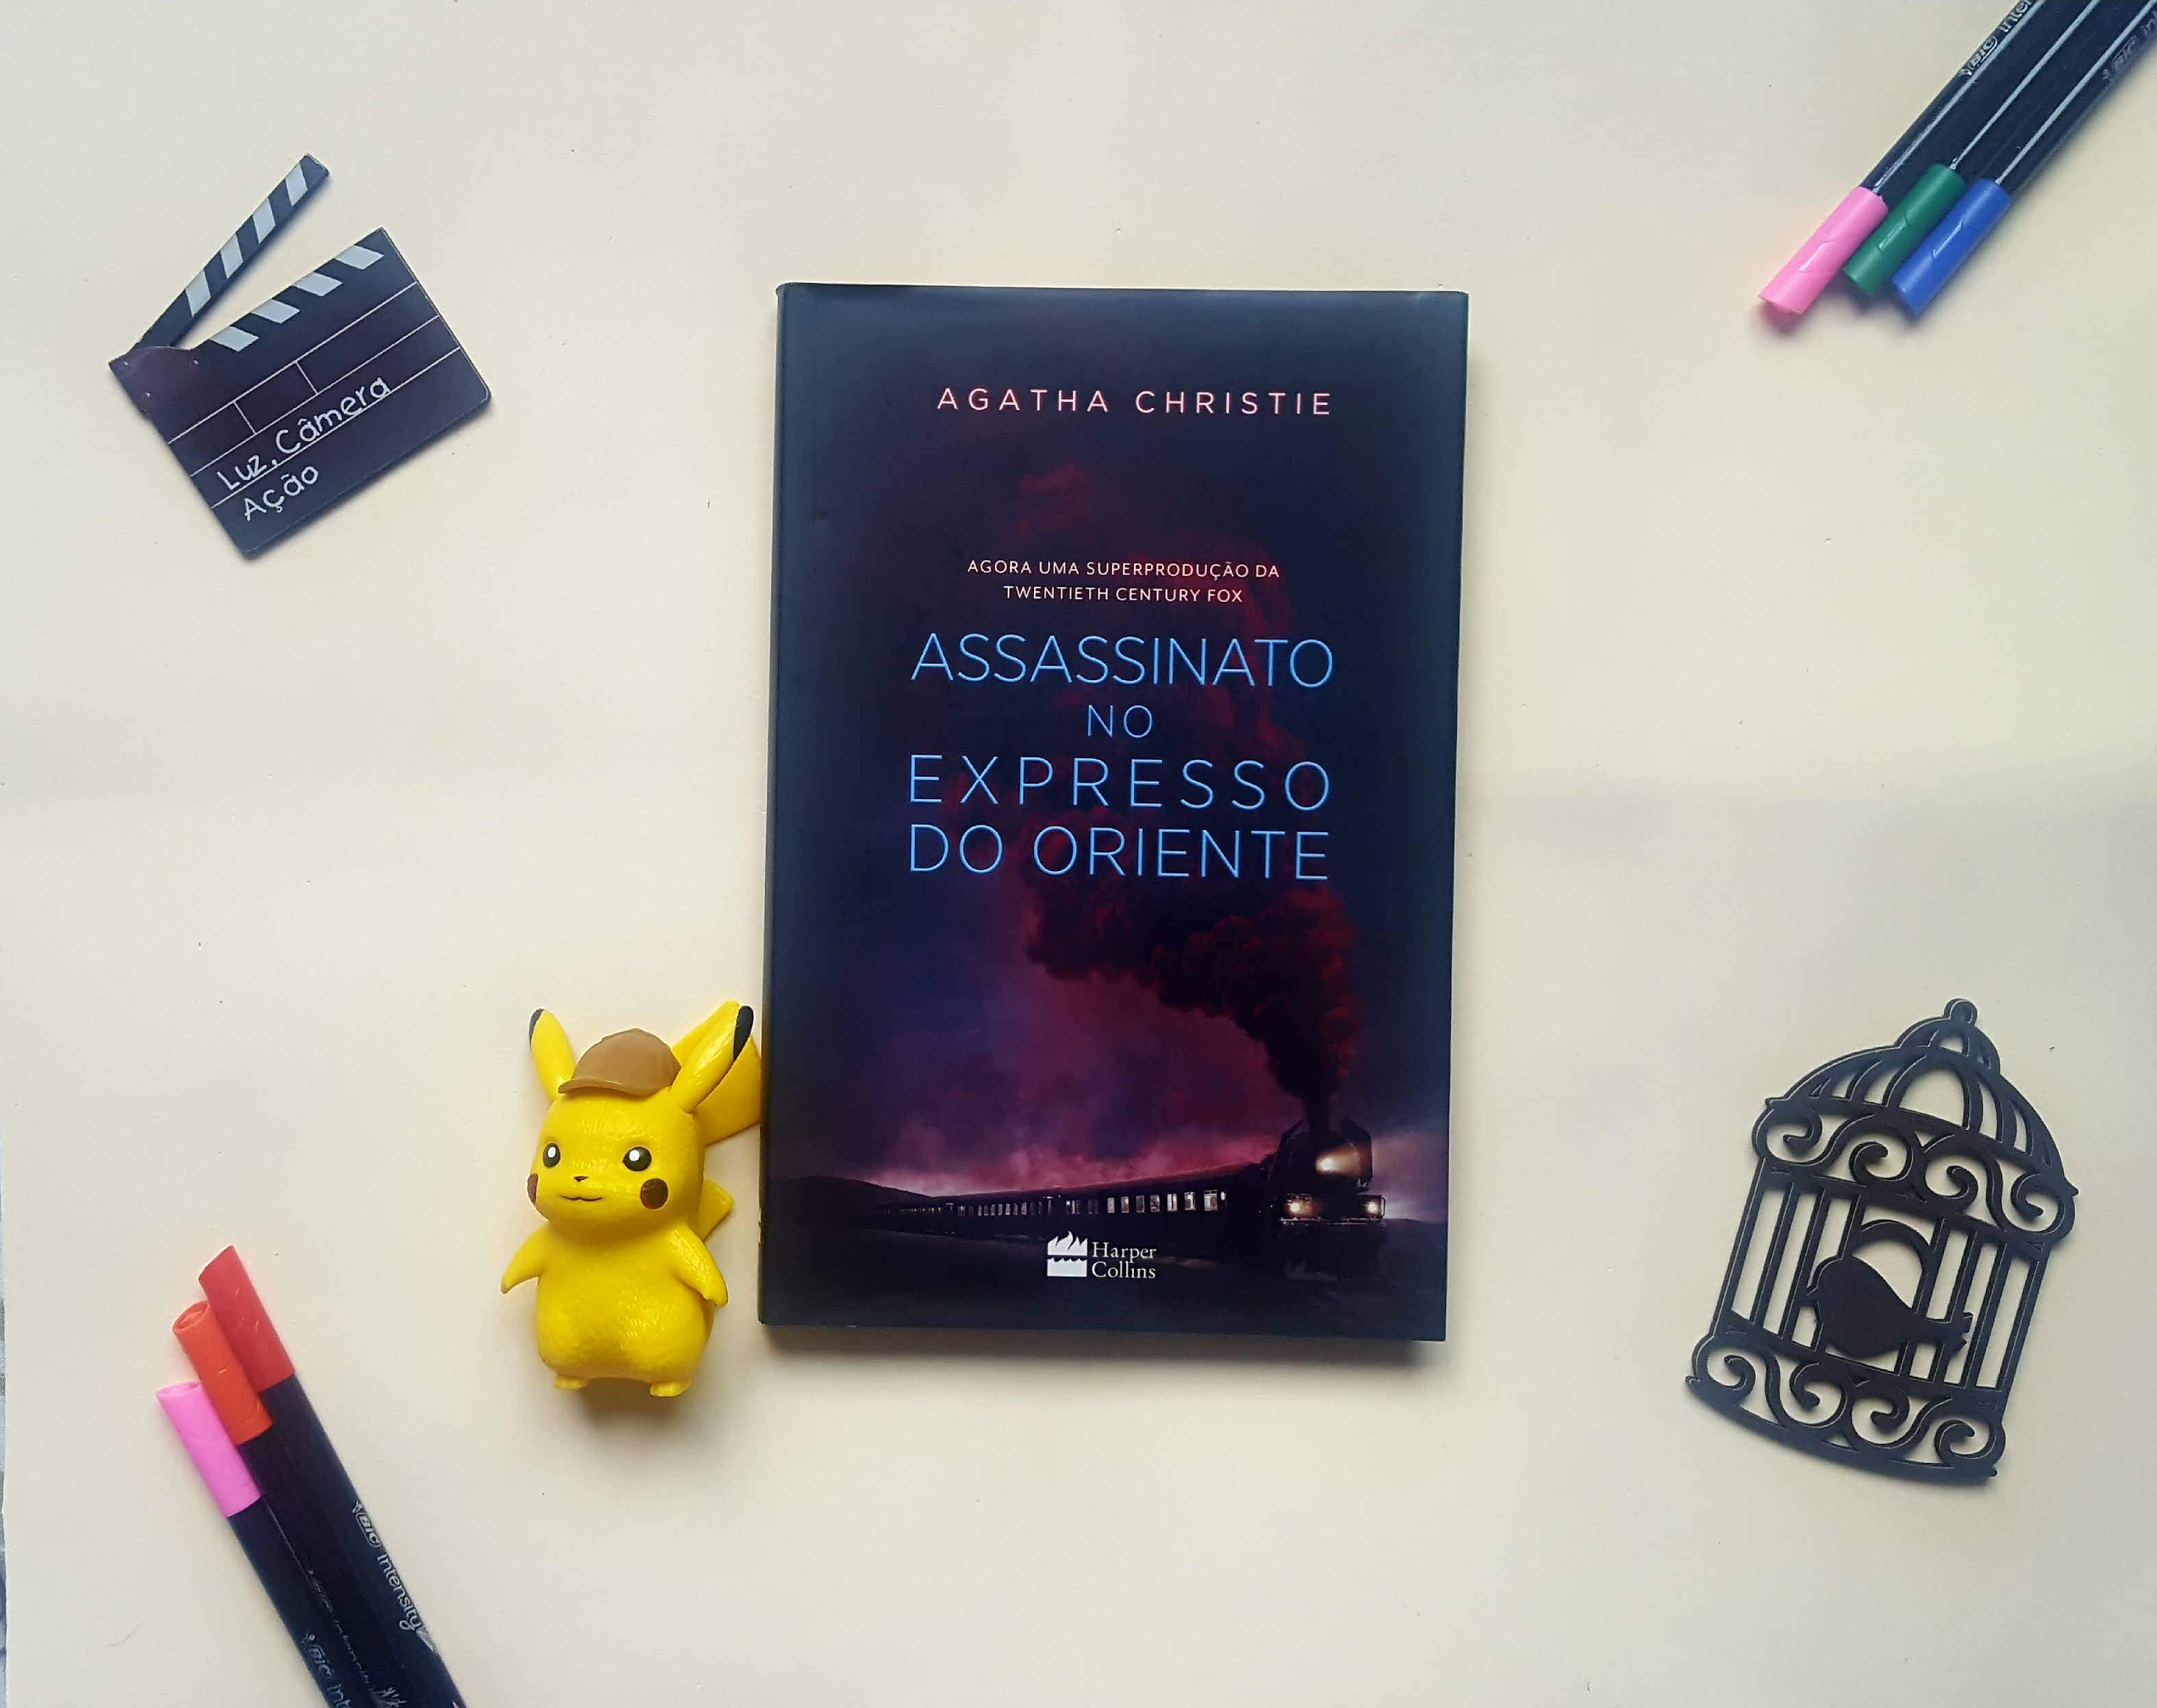 Assassinato no Expresso Oriente | Agatha Christie